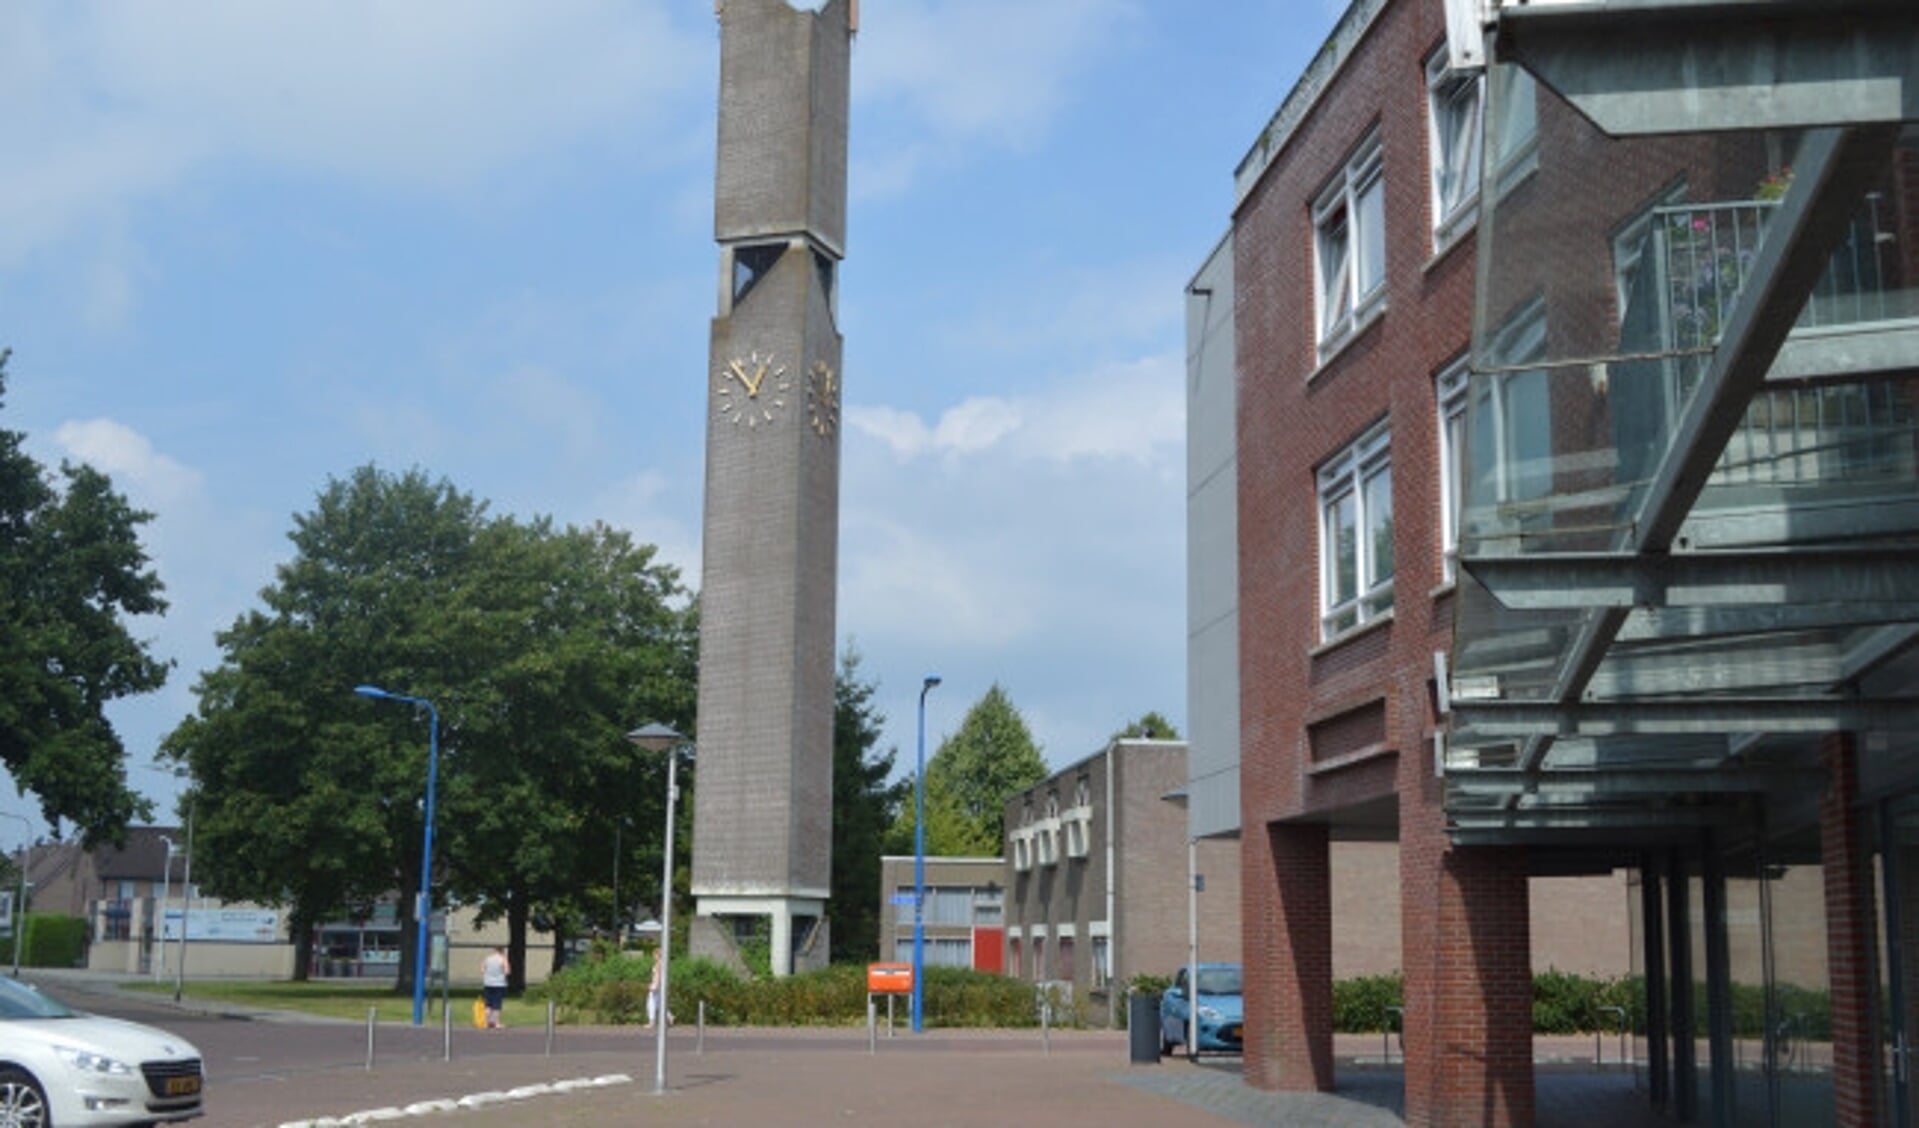  Kerkcentrum De Hoeksteen in Swifterbant